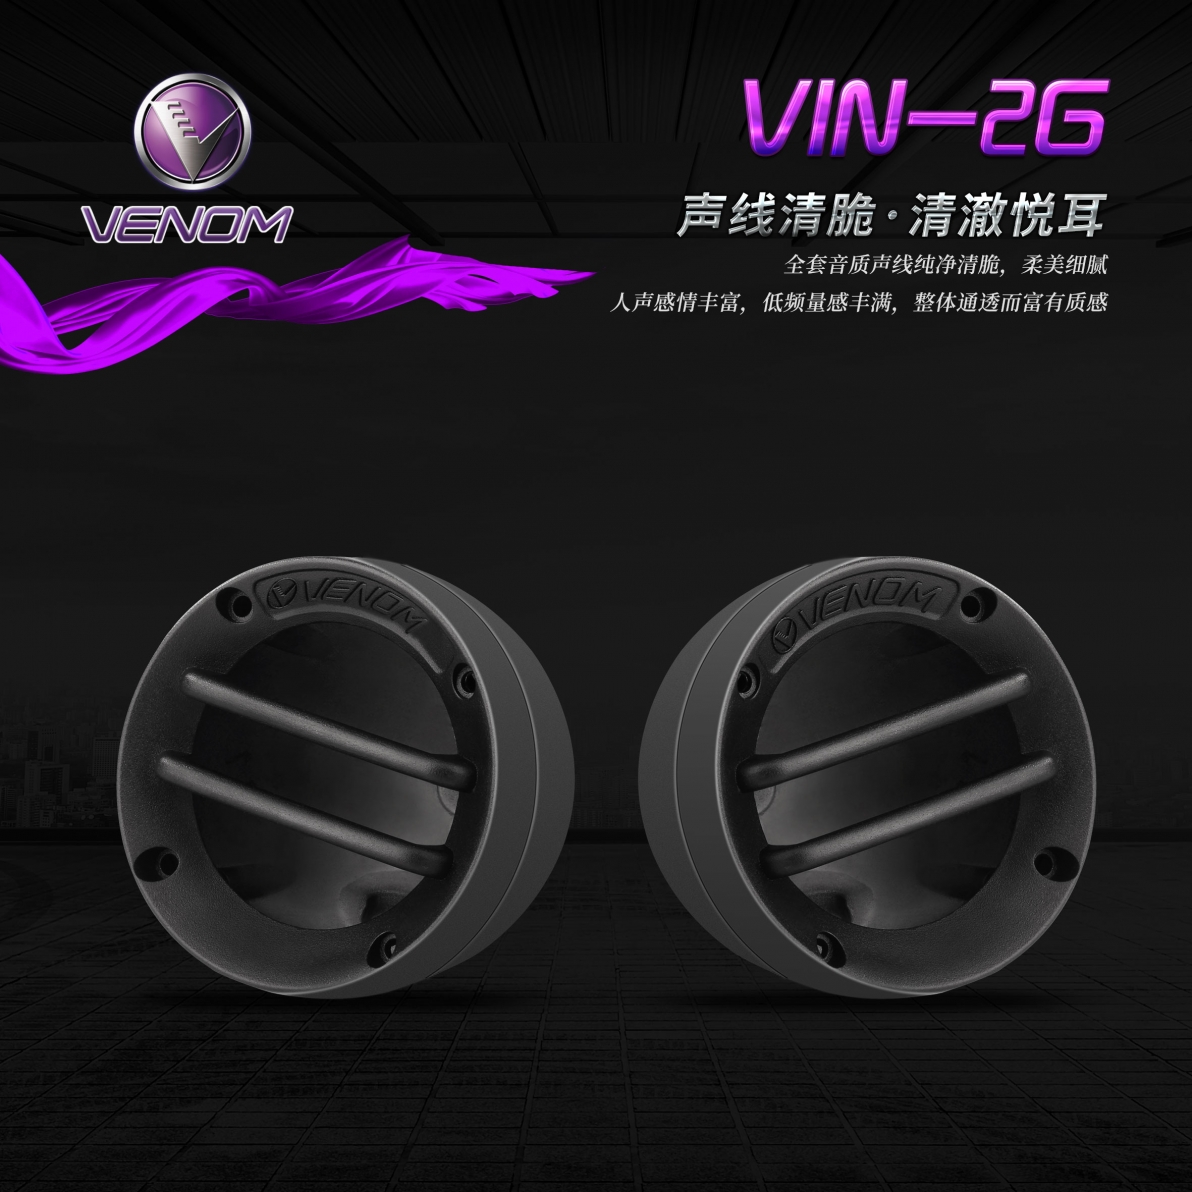 VIN-2G